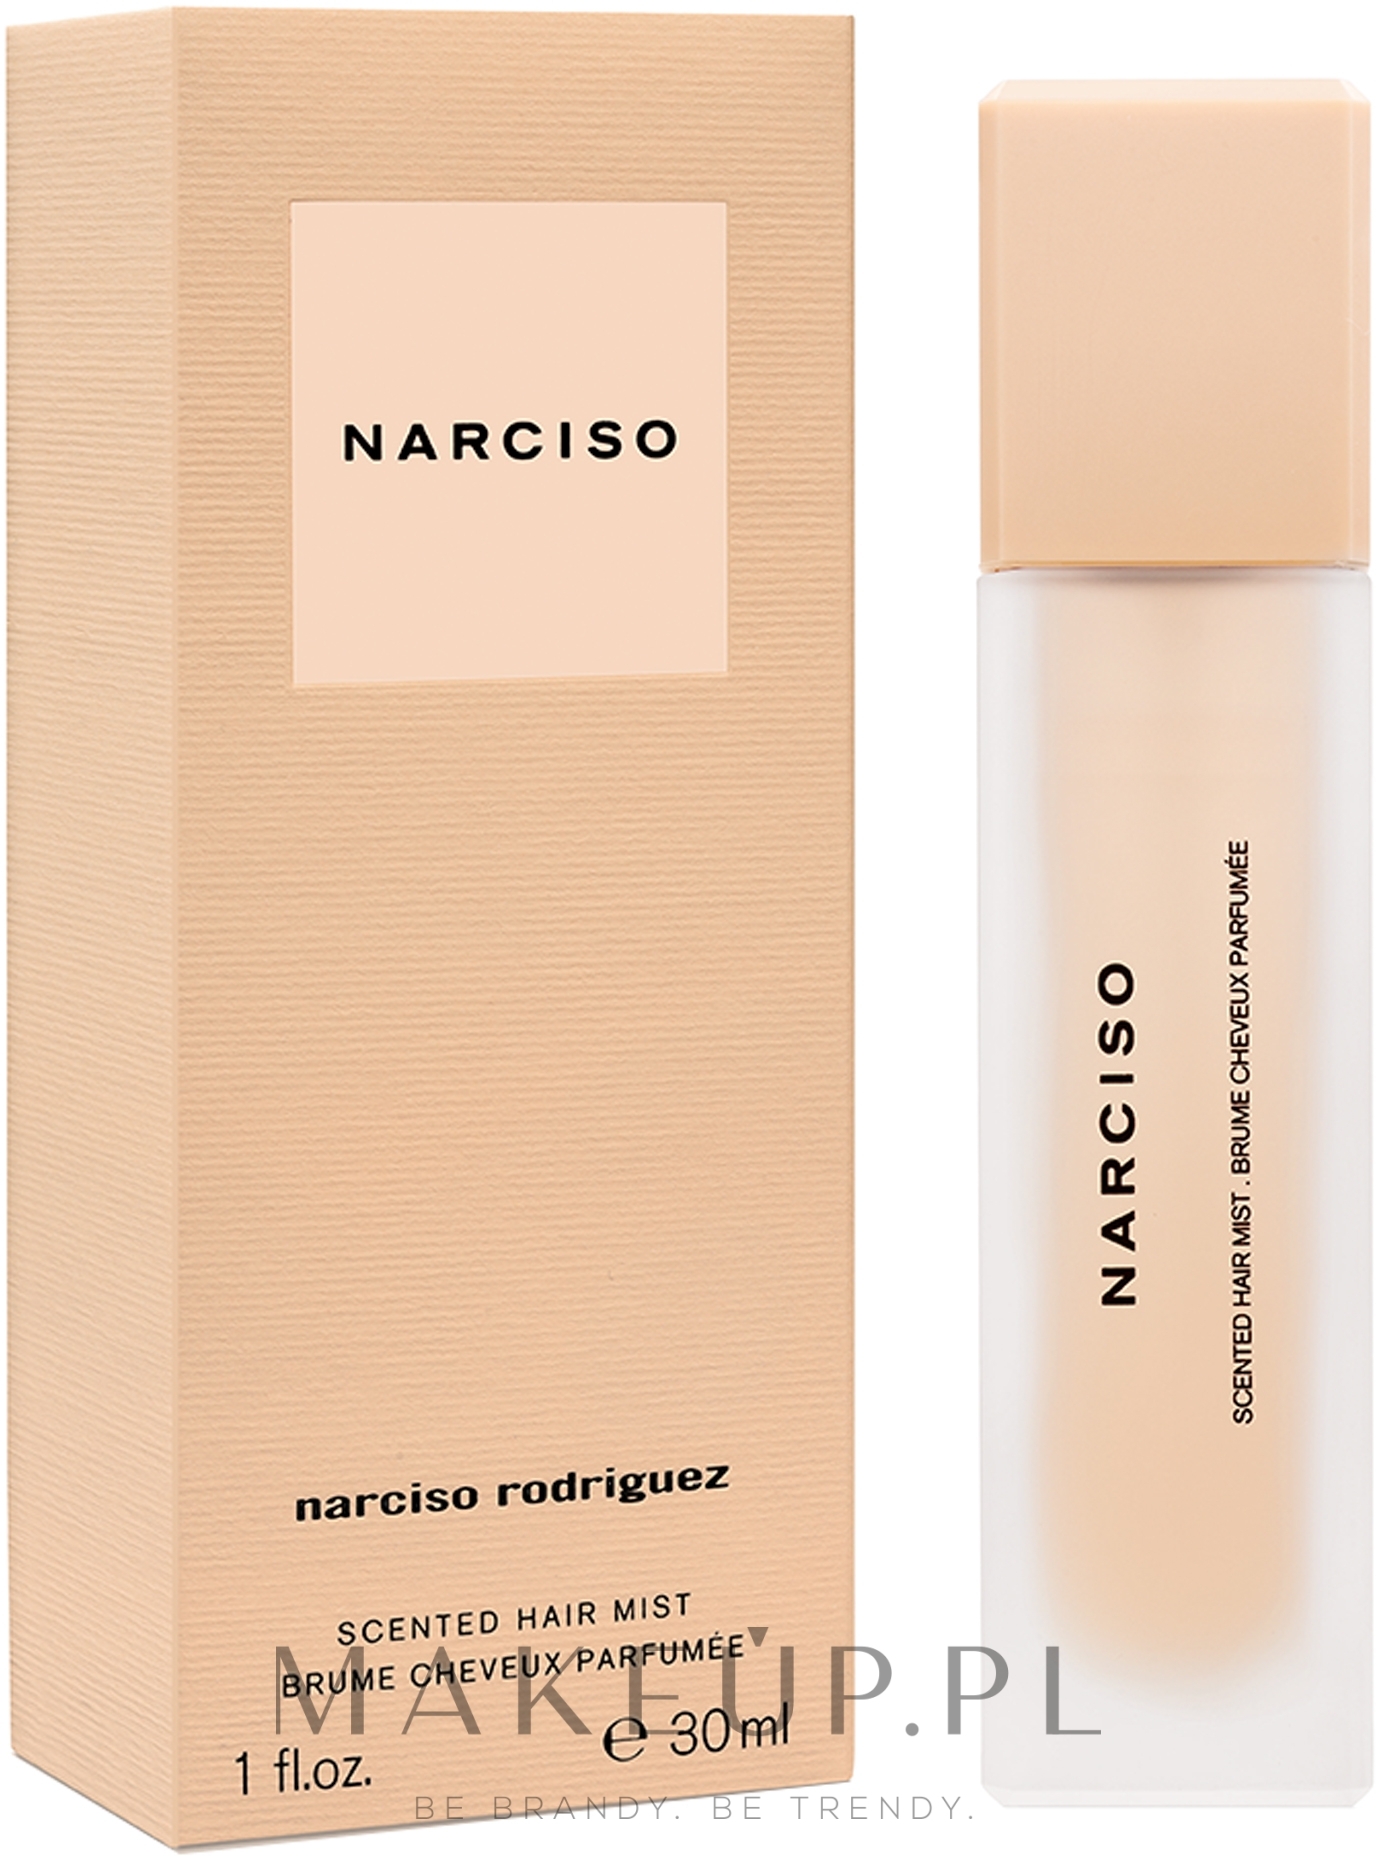 narciso rodriguez lakier do włosów 30ml narciso